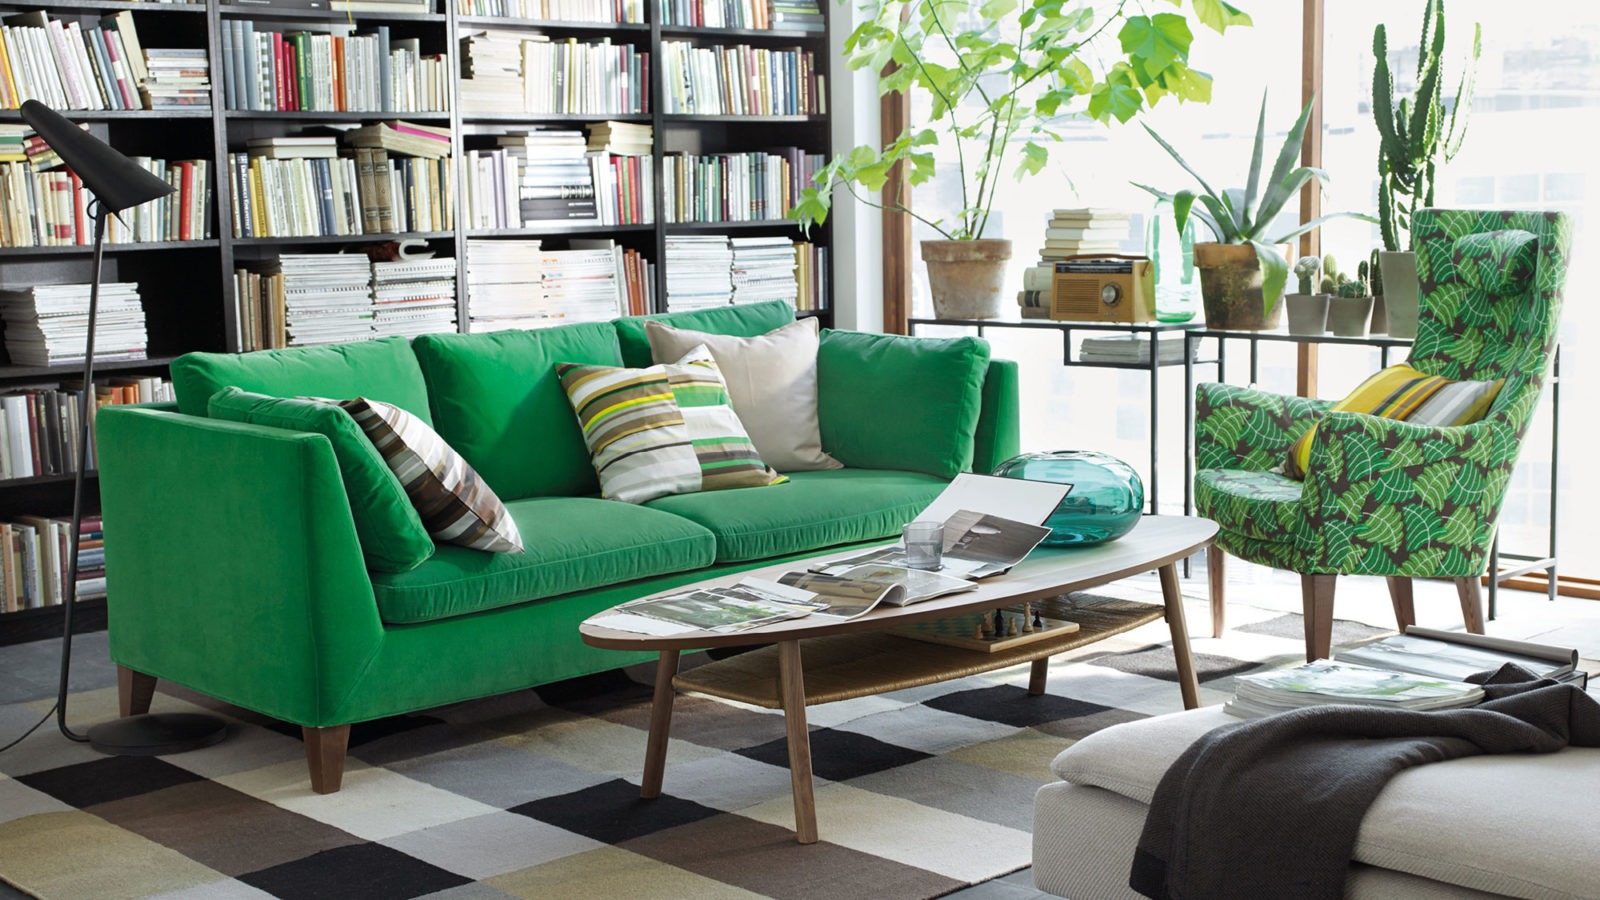 Ett rum med en grön soffa och en grönmönstrad fåtölj vid ett ovalt soffbord. Gröna växter i ett stort, solbelyst fönster.